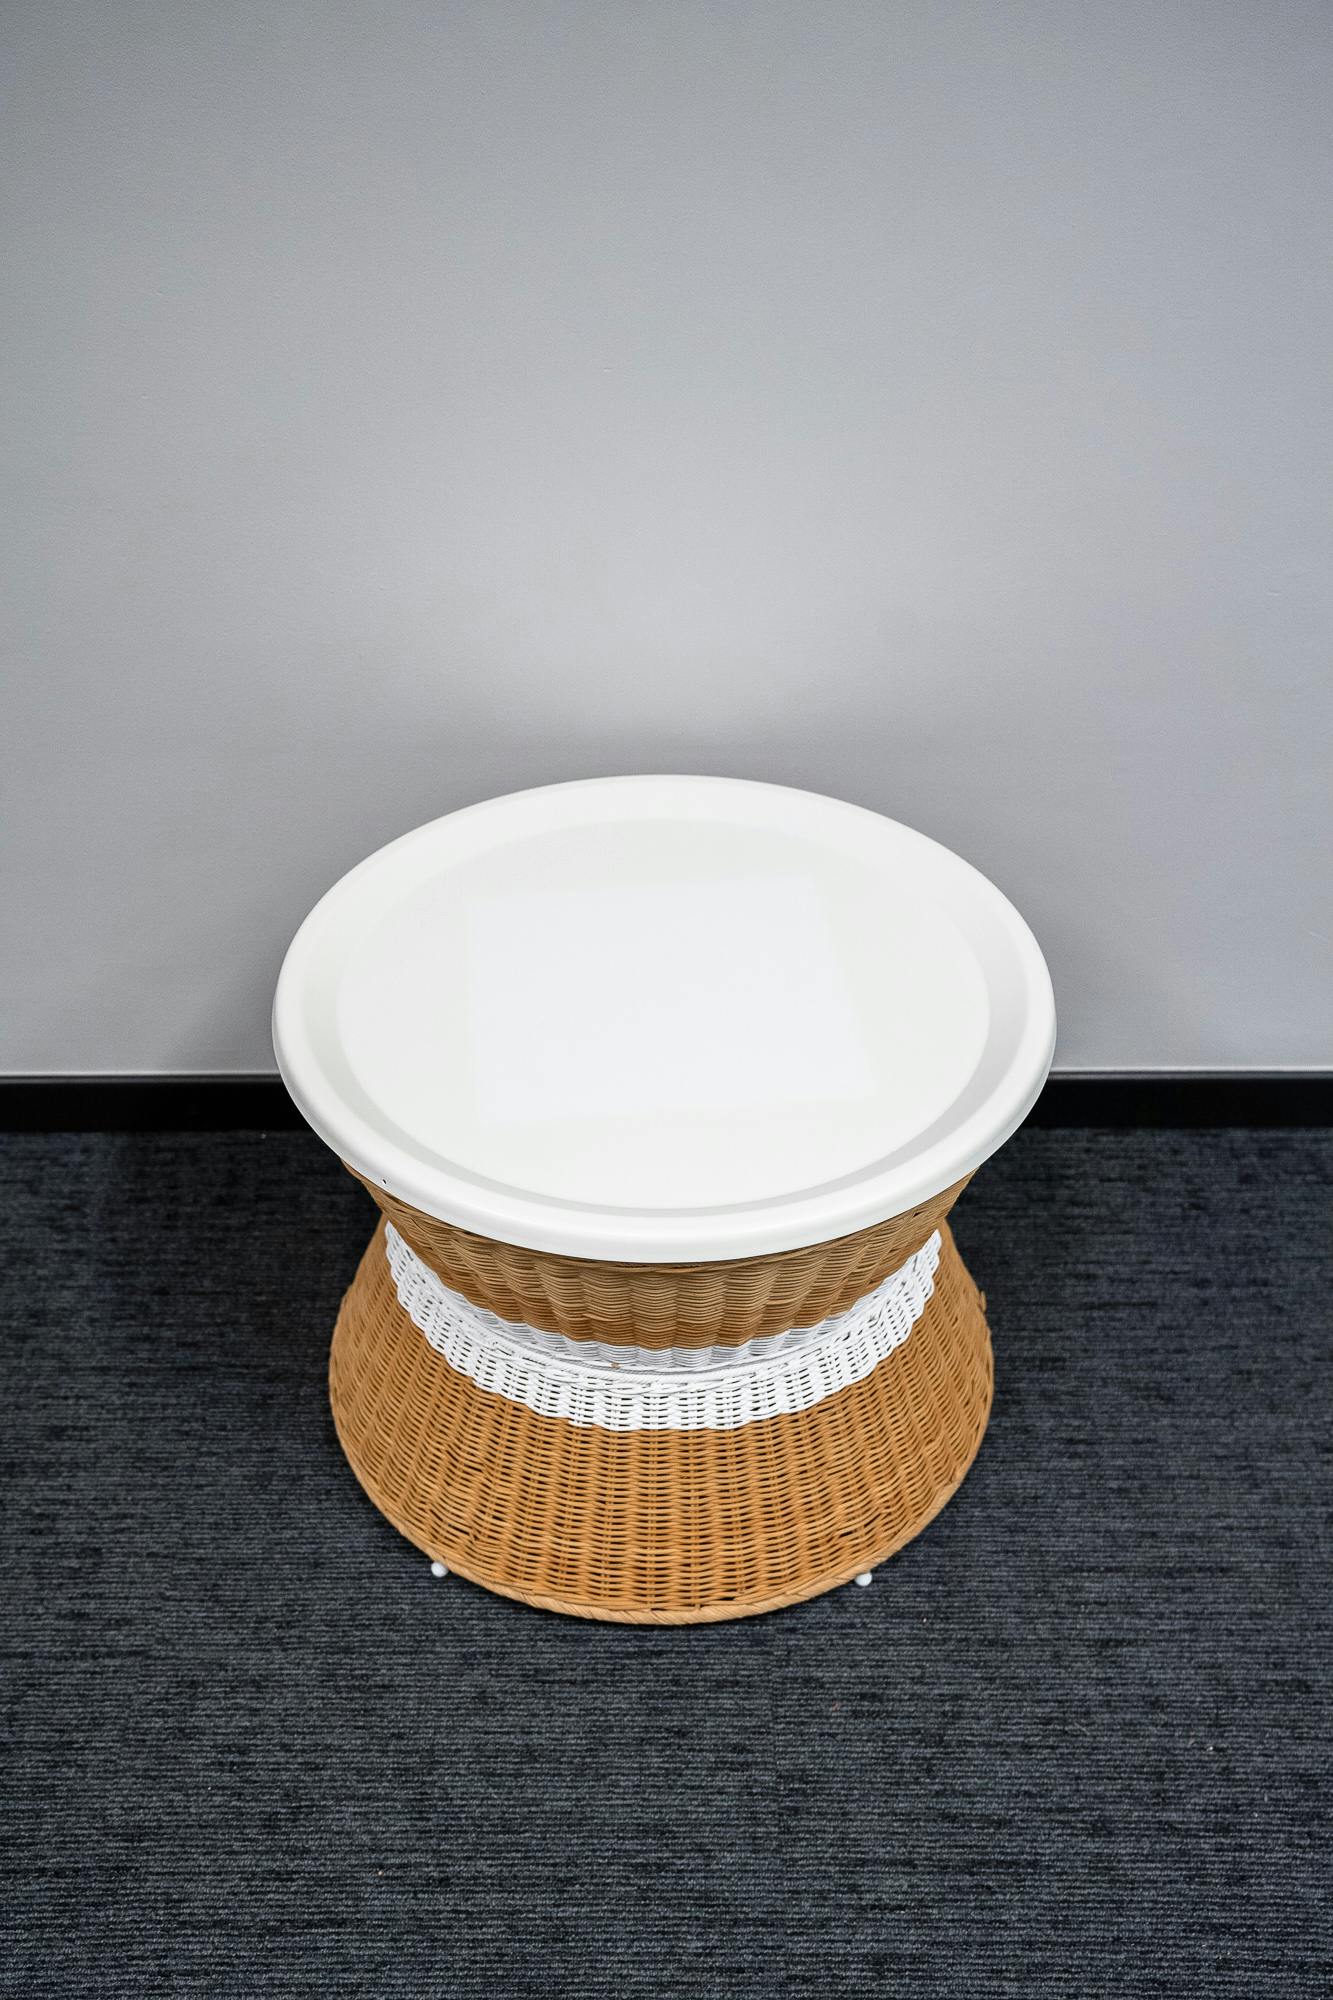 Rieten salontafel met wit blad - Tweedehands kwaliteit "Tafels" - Relieve Furniture - 2